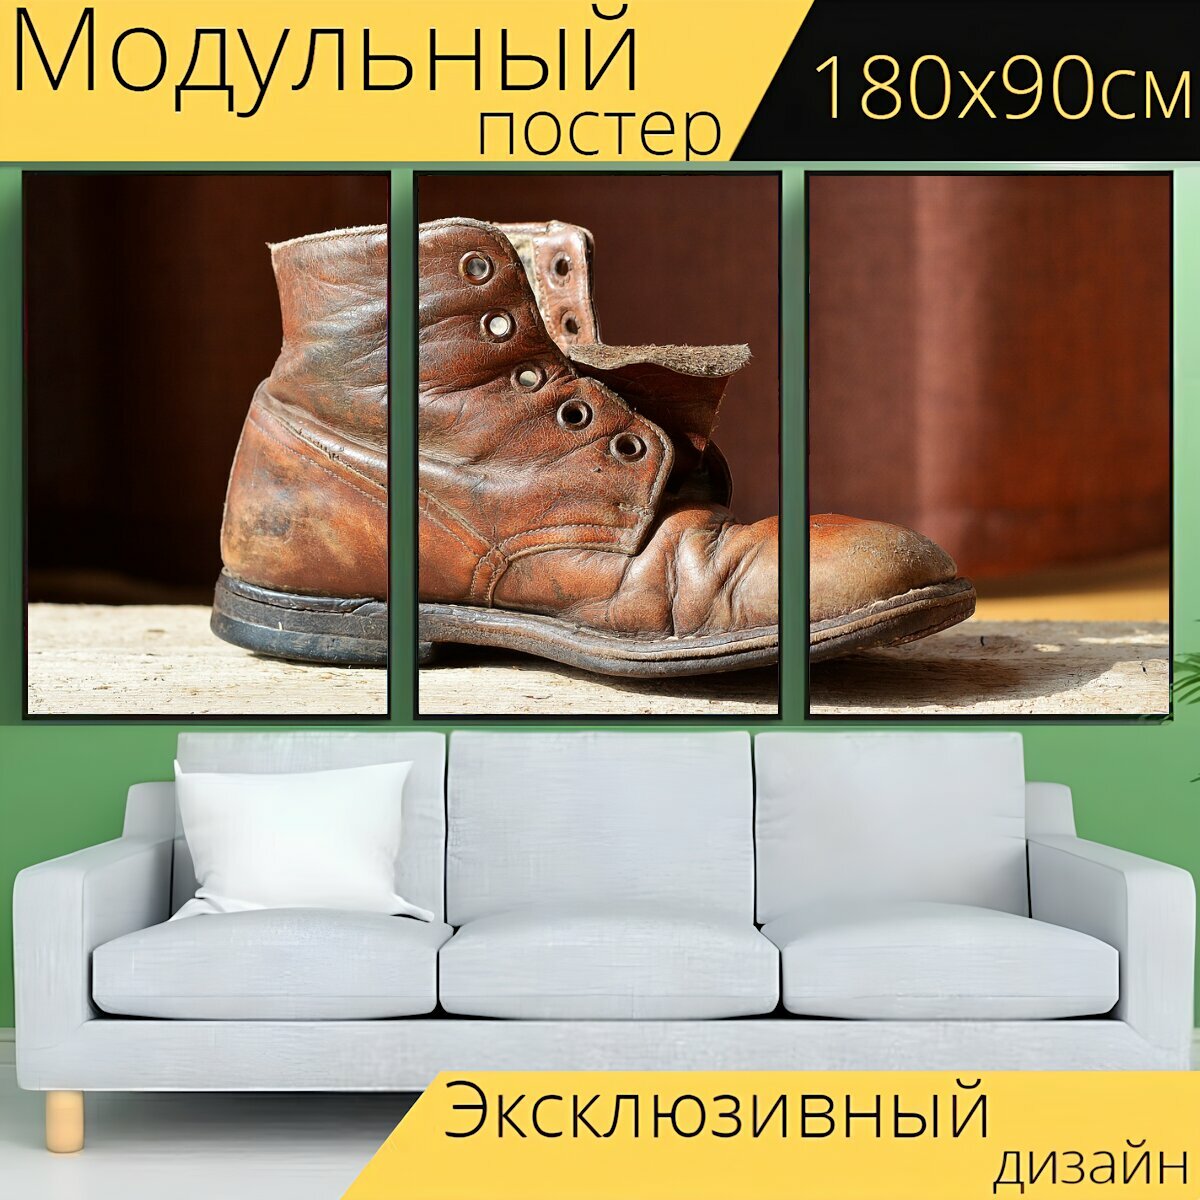 Модульный постер "Обувь, детская обувь, кожаная обувь" 180 x 90 см. для интерьера